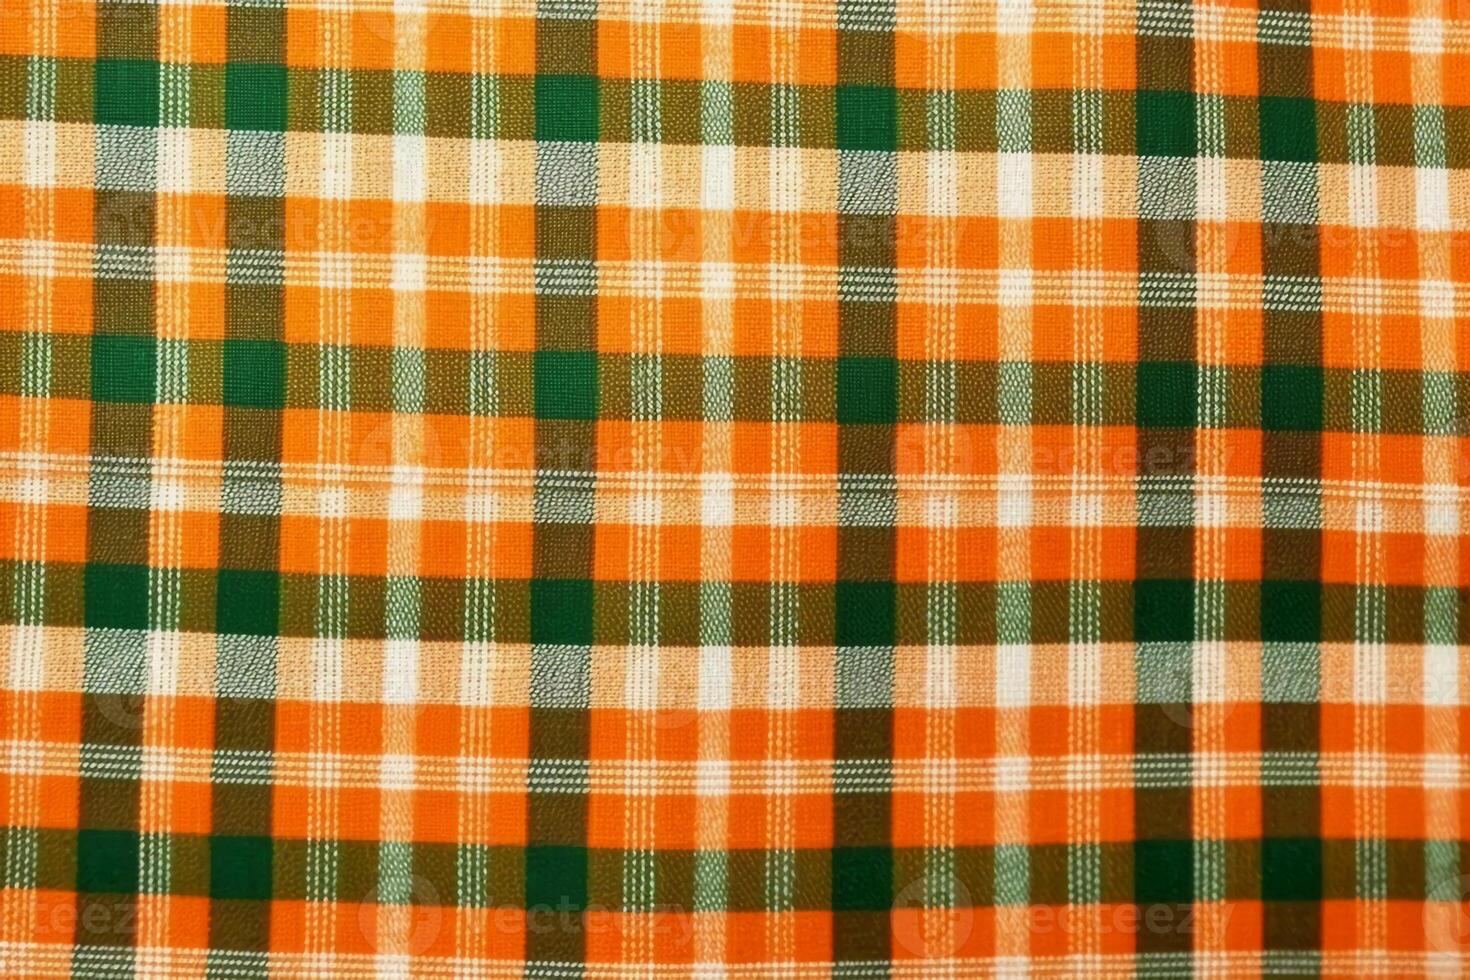 orange fabric textile pattern, plaid background, linen cotton. photo